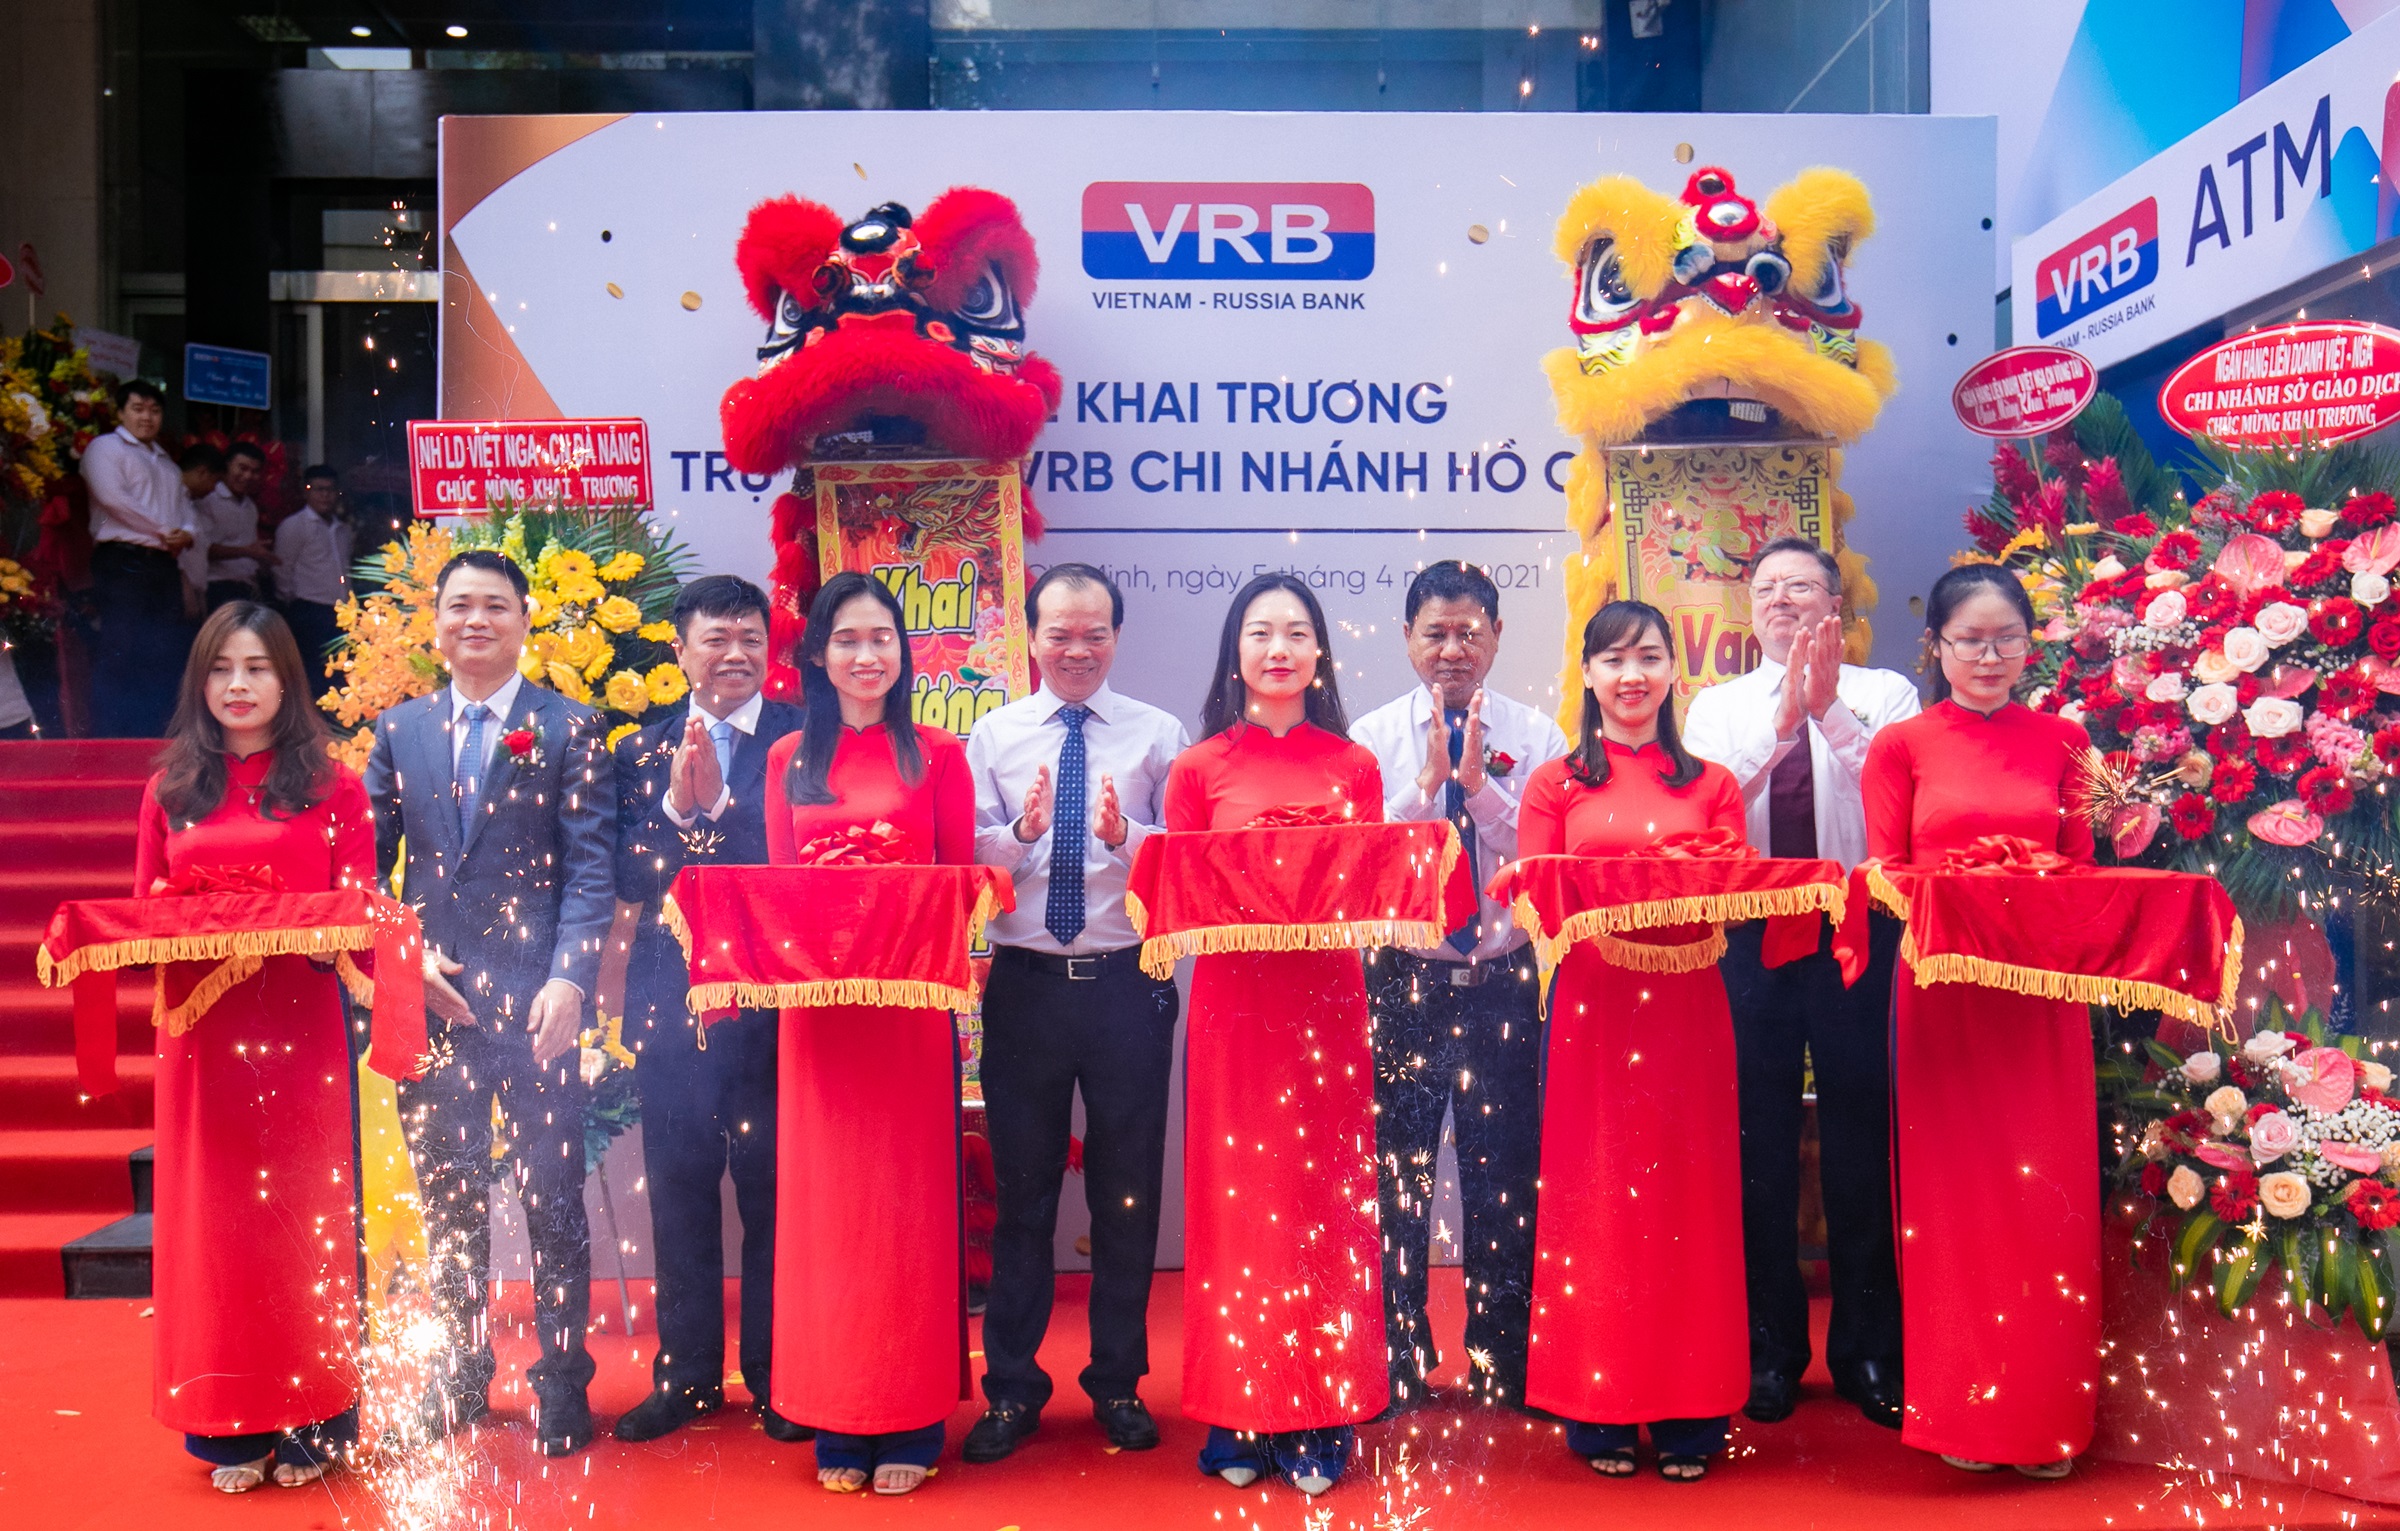 Ban lãnh đạo VRB và đại diện BIDV cắt băng khánh thành trụ sở mới VRB chi nhánh TP HCM ở số 107-109-111 Nguyễn Đình Chiểu, quận 3.